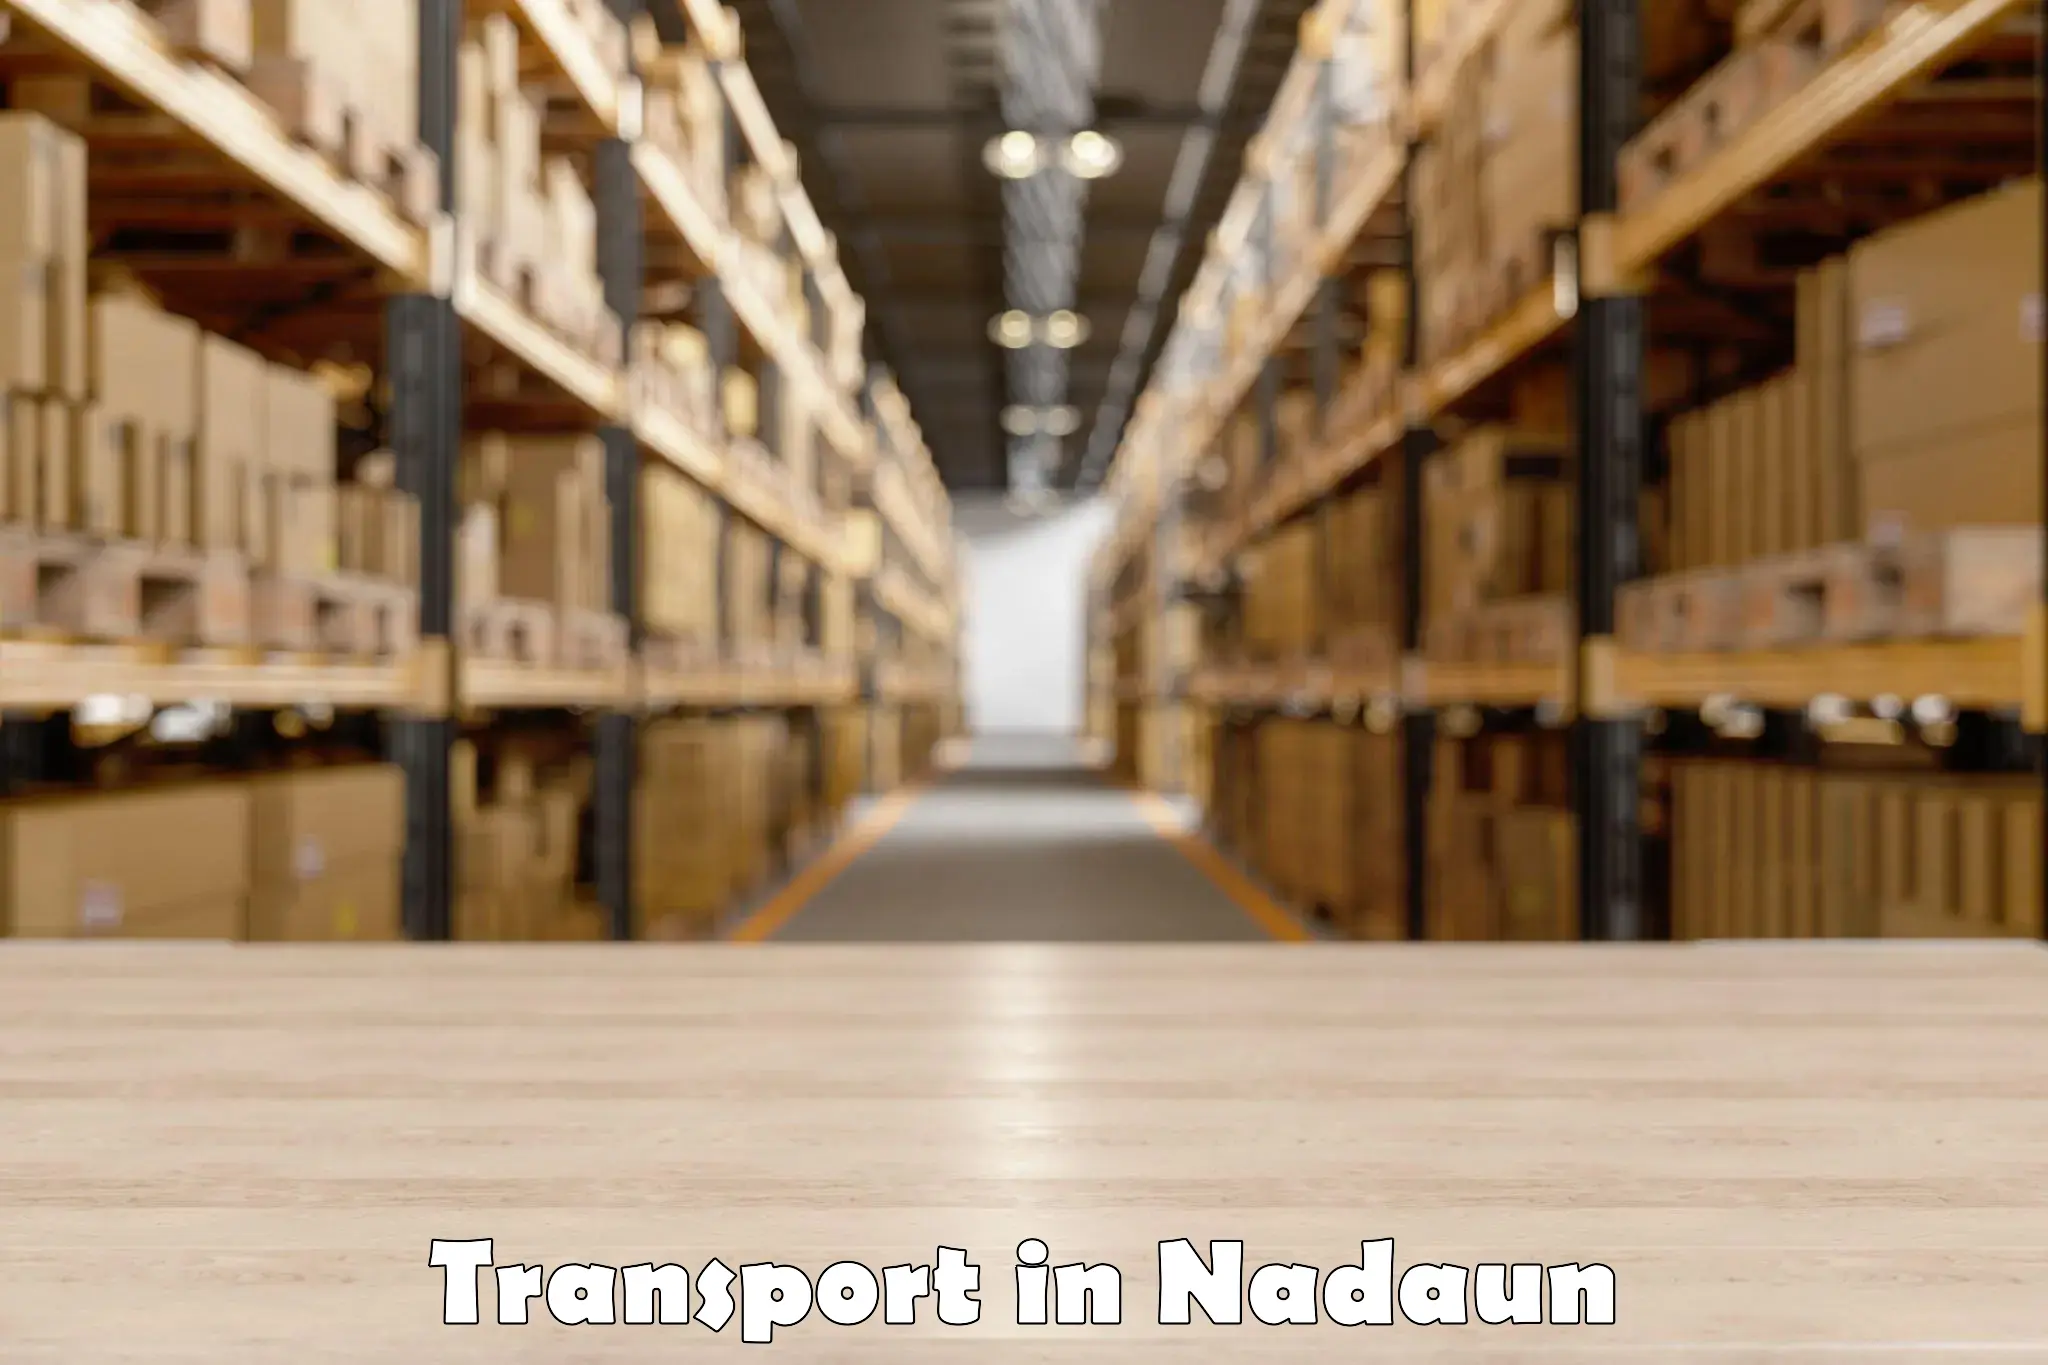 Bike shipping service in Nadaun